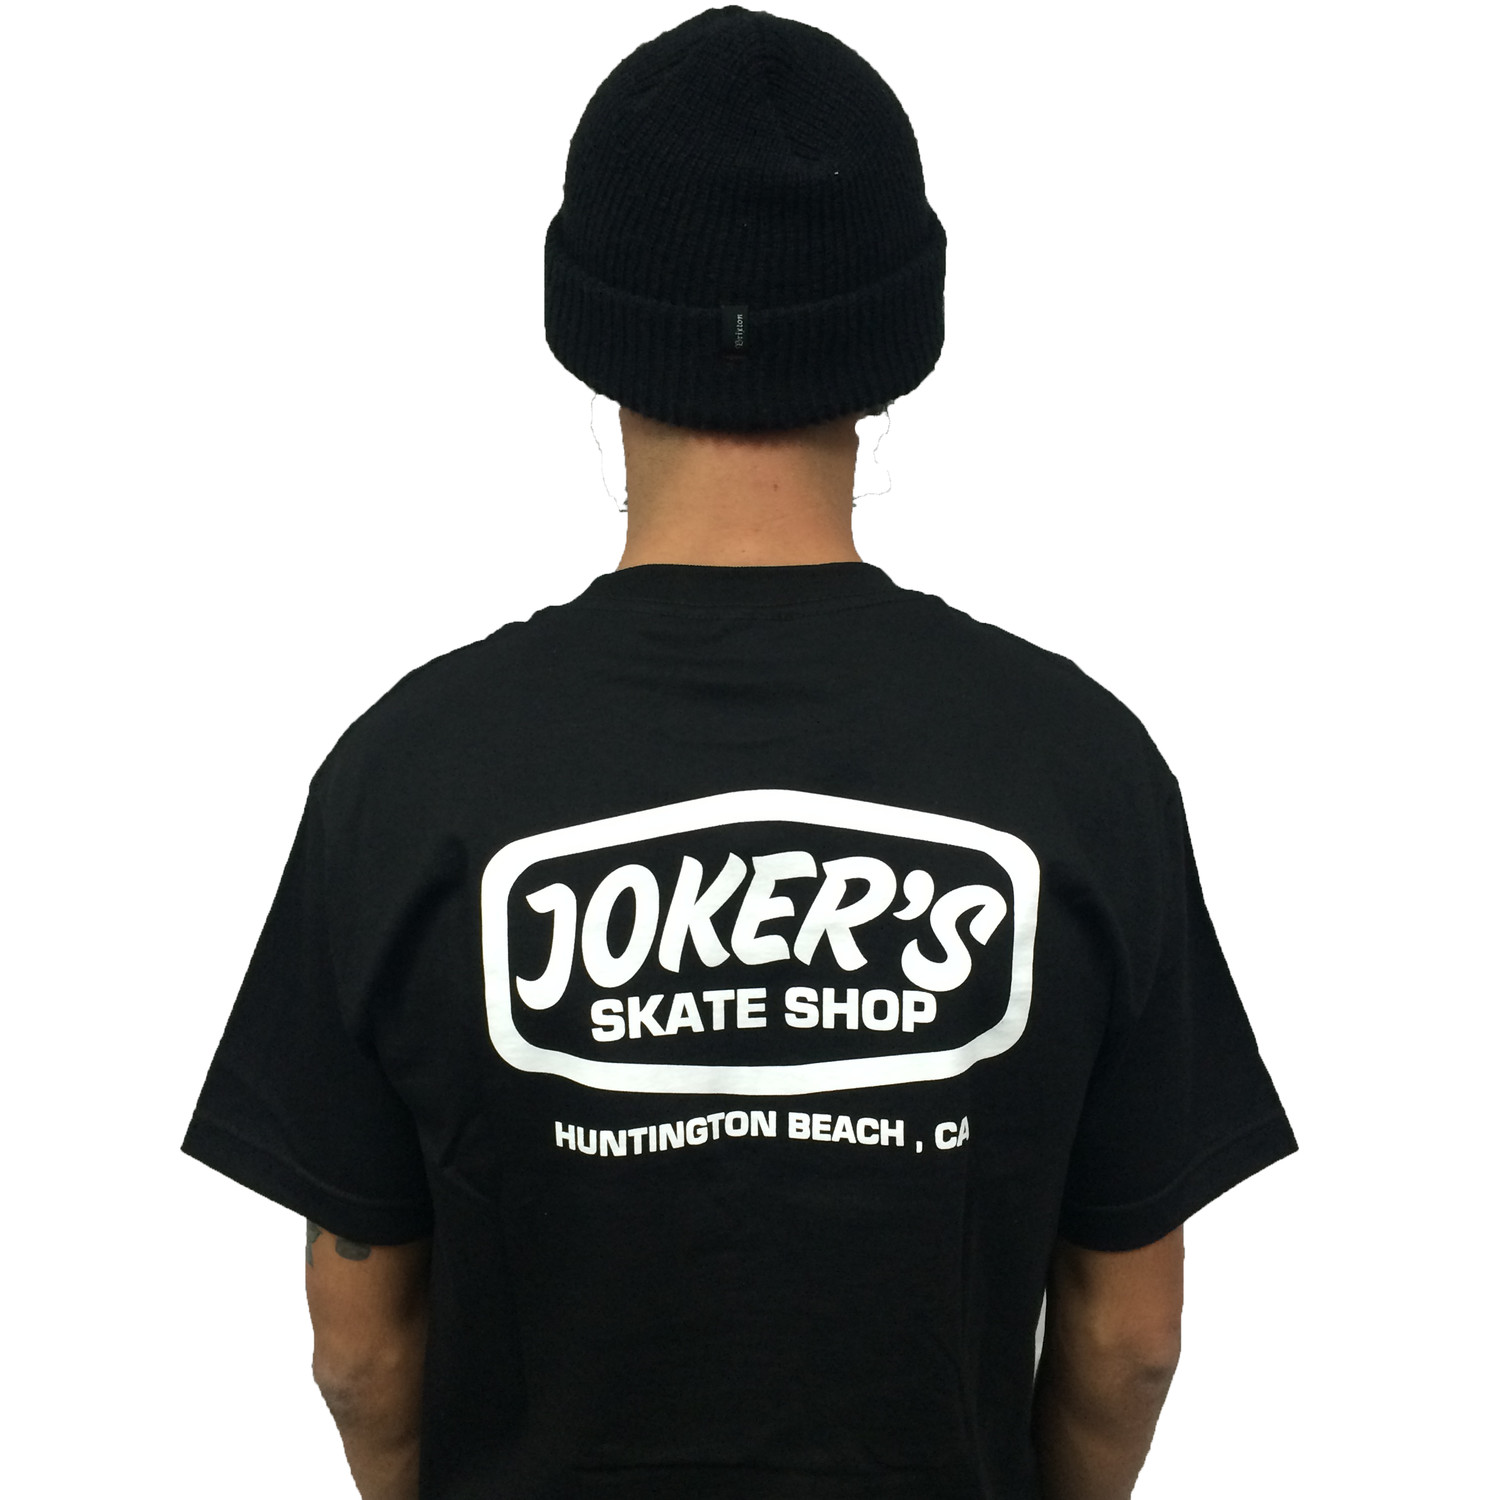 Jokers Skate Shop Gear